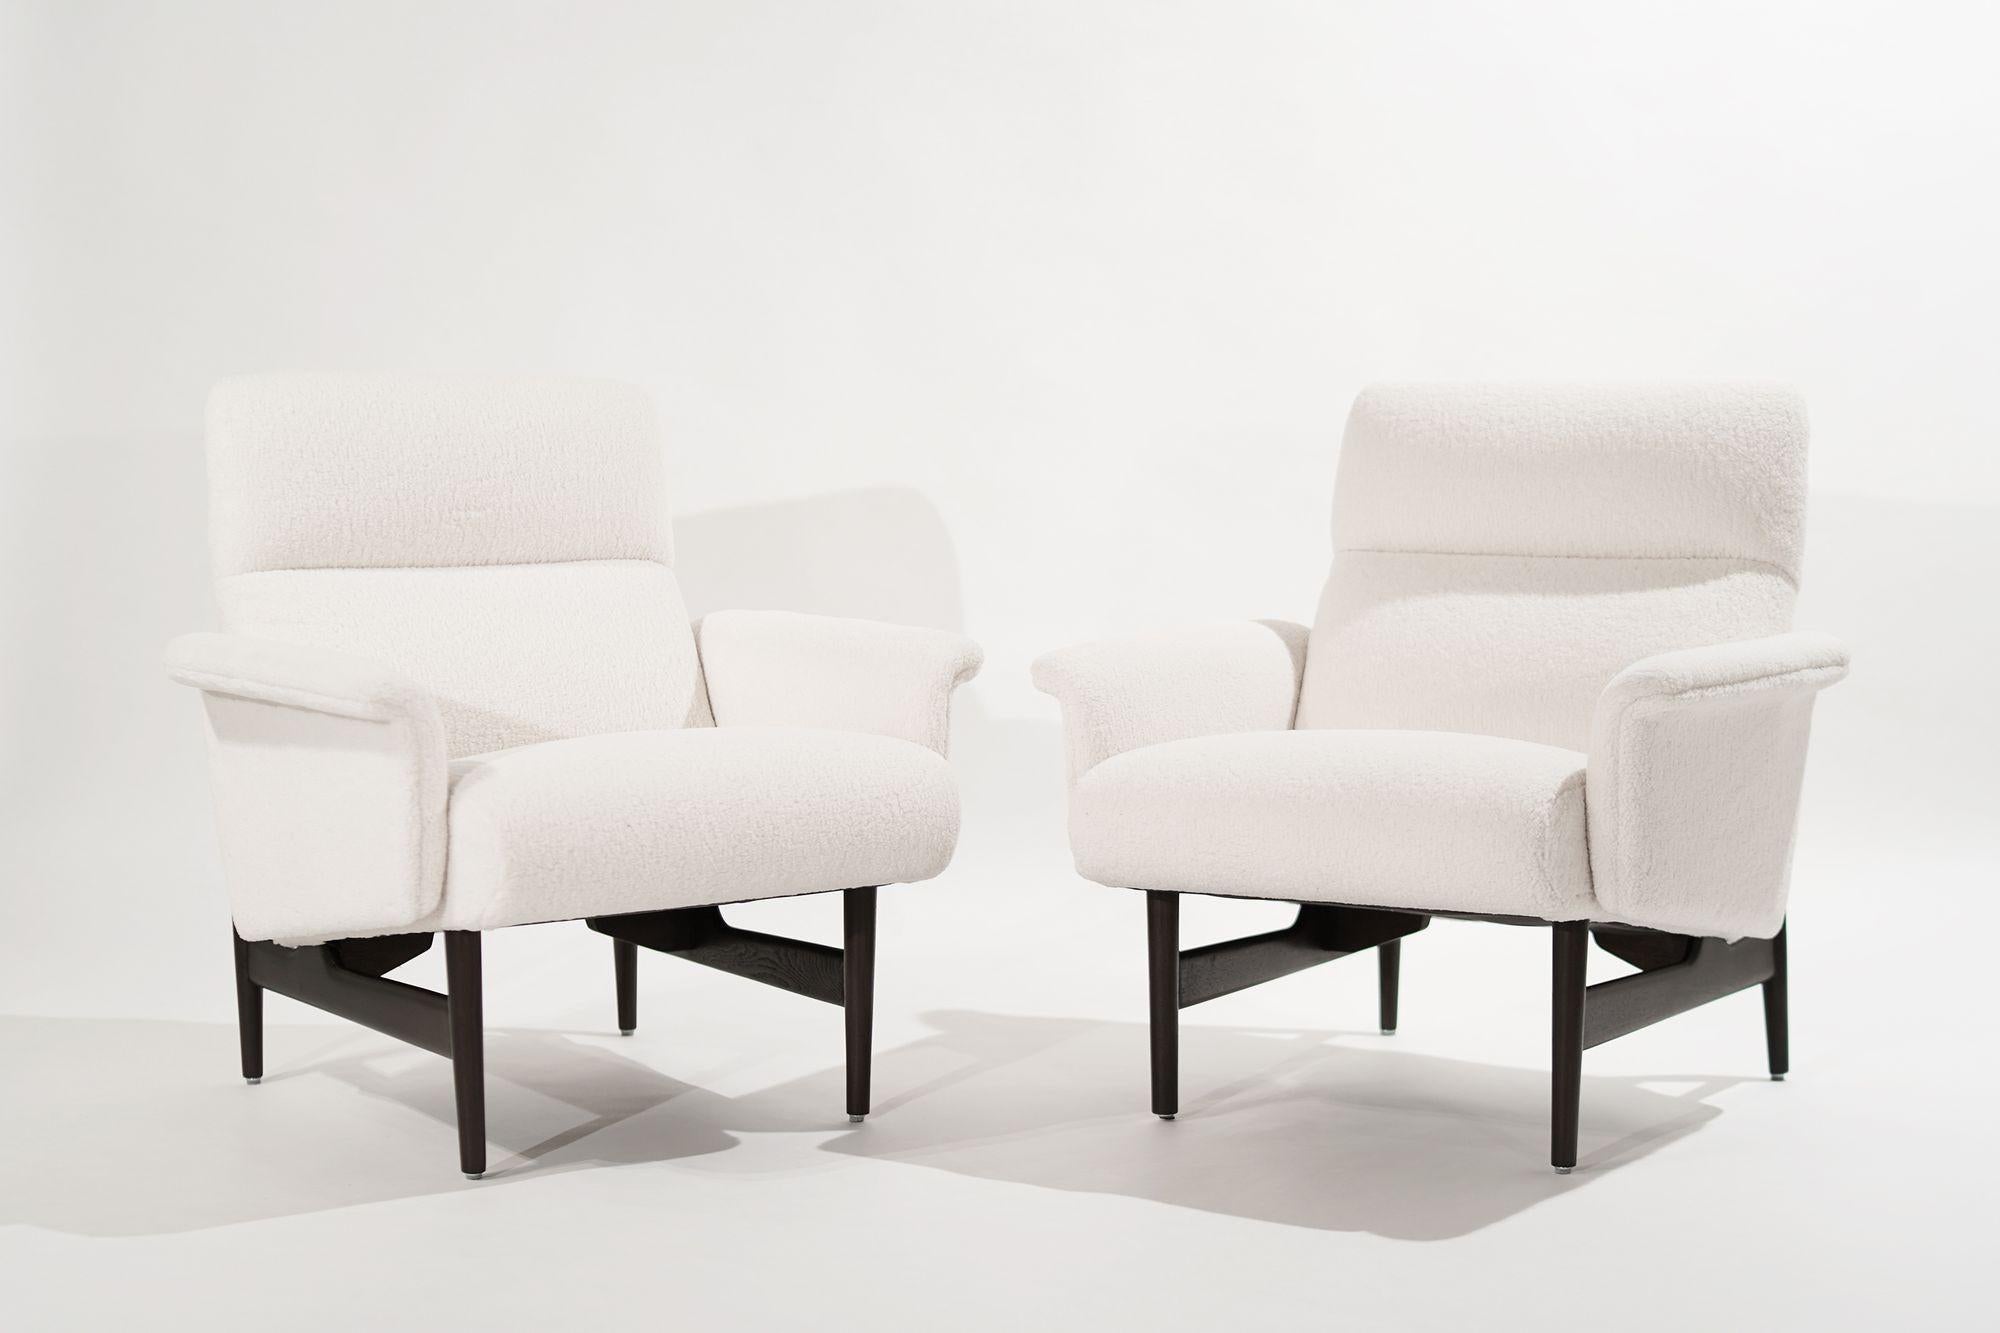 Un superbe ensemble de chaises longues, d'origine danoise, datant d'environ 1950-1959. Entièrement restauré et retapissé en laine lourde par Kravet, supports en noyer, refait dans notre finition noyer foncé. Un total de quatre chaises est